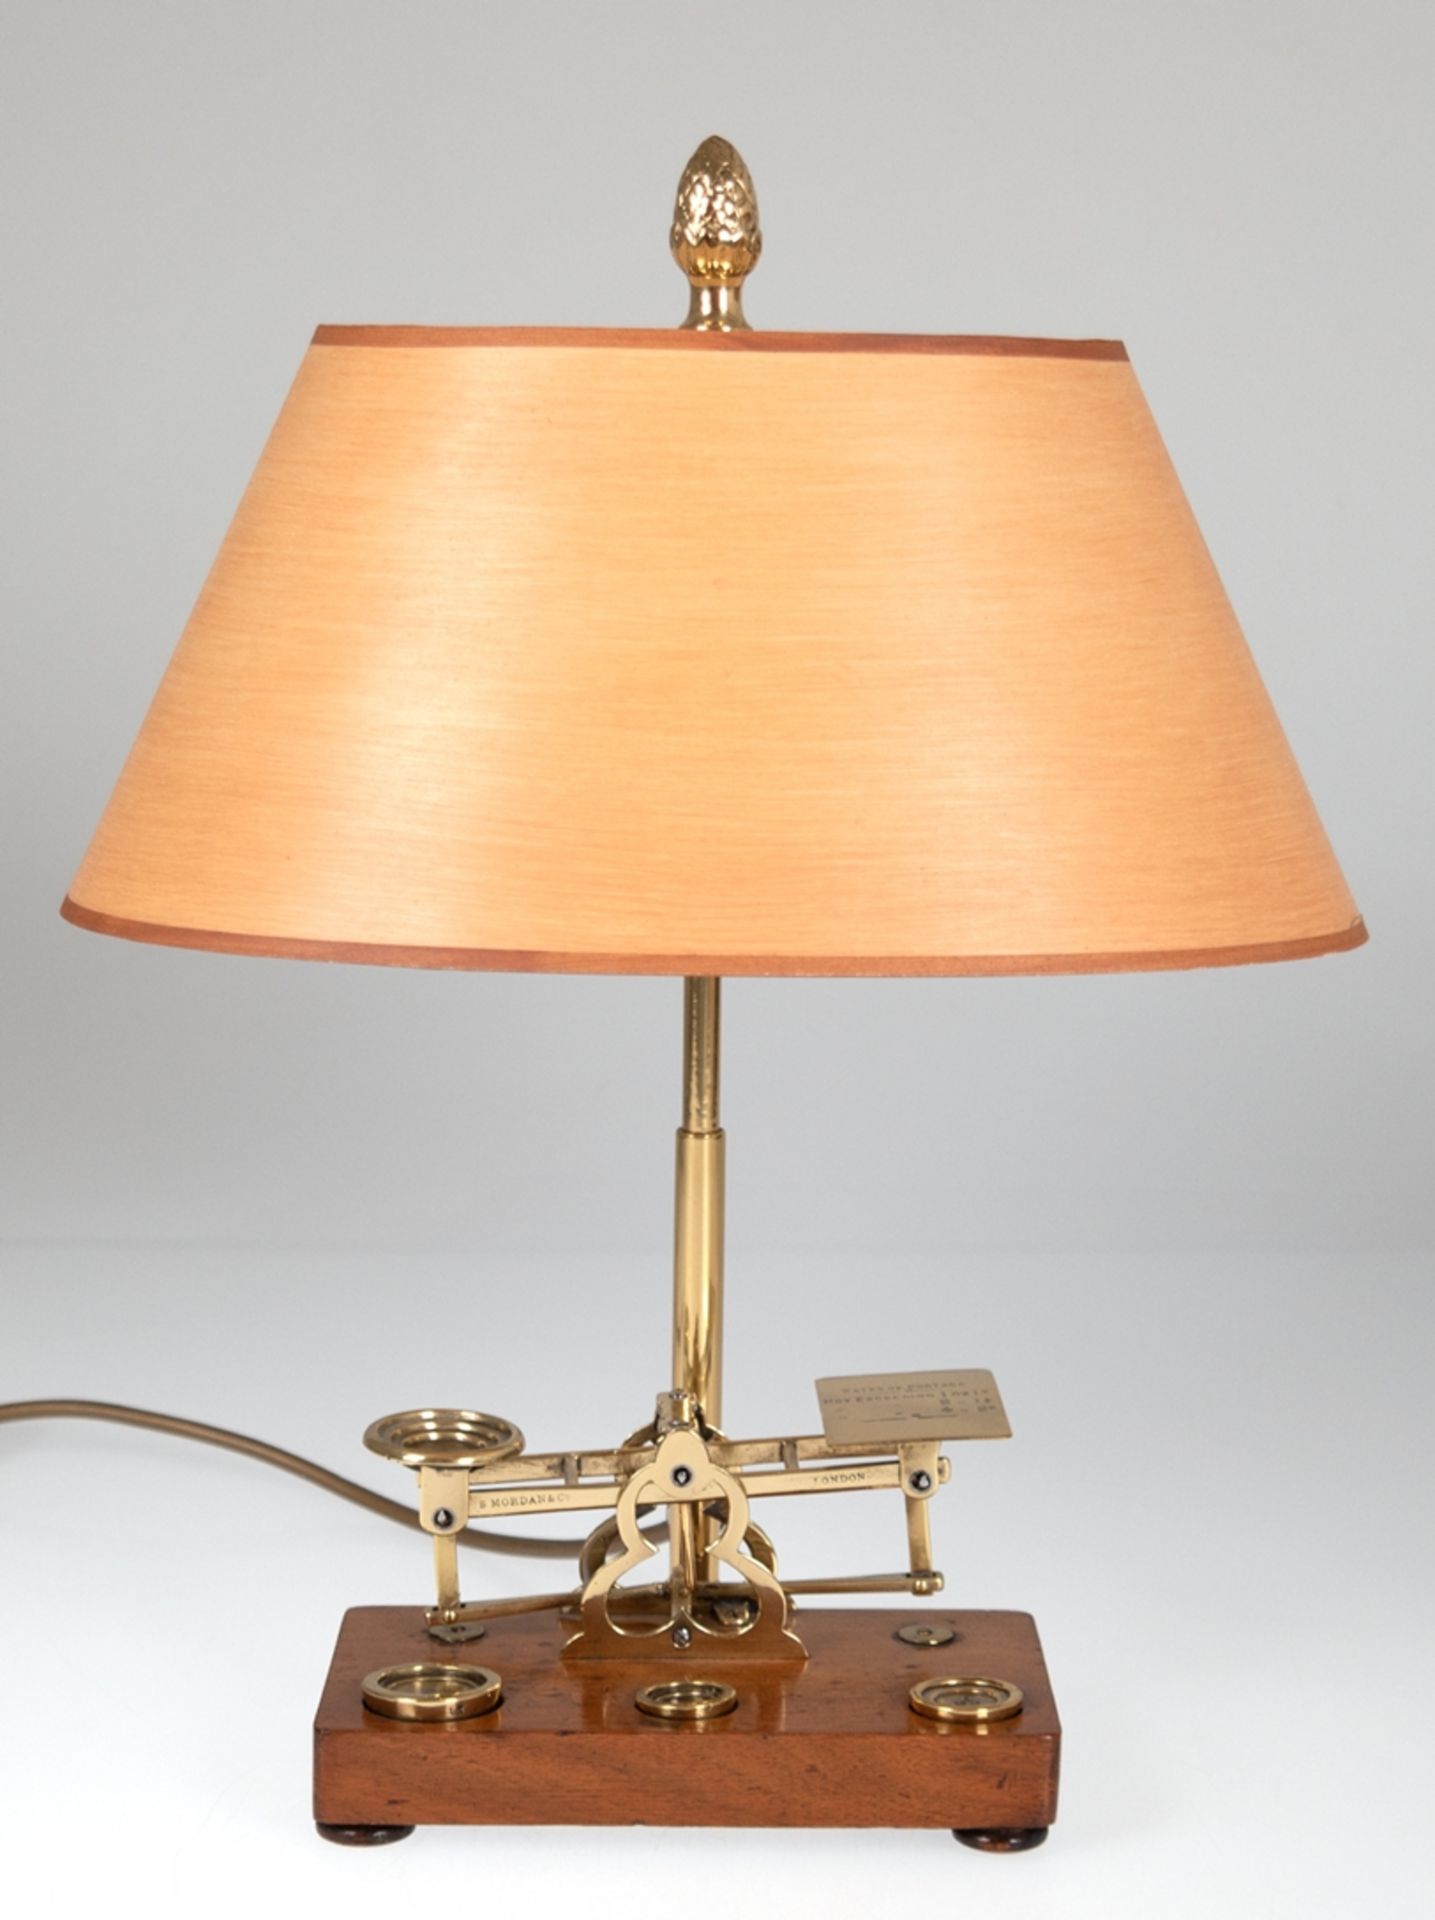 Tischlampe mit Briefwaage als Fuß, mit 3 Gewichten, 1/2 - 2 OZ, 2-flammige Messing-Montierung, oran